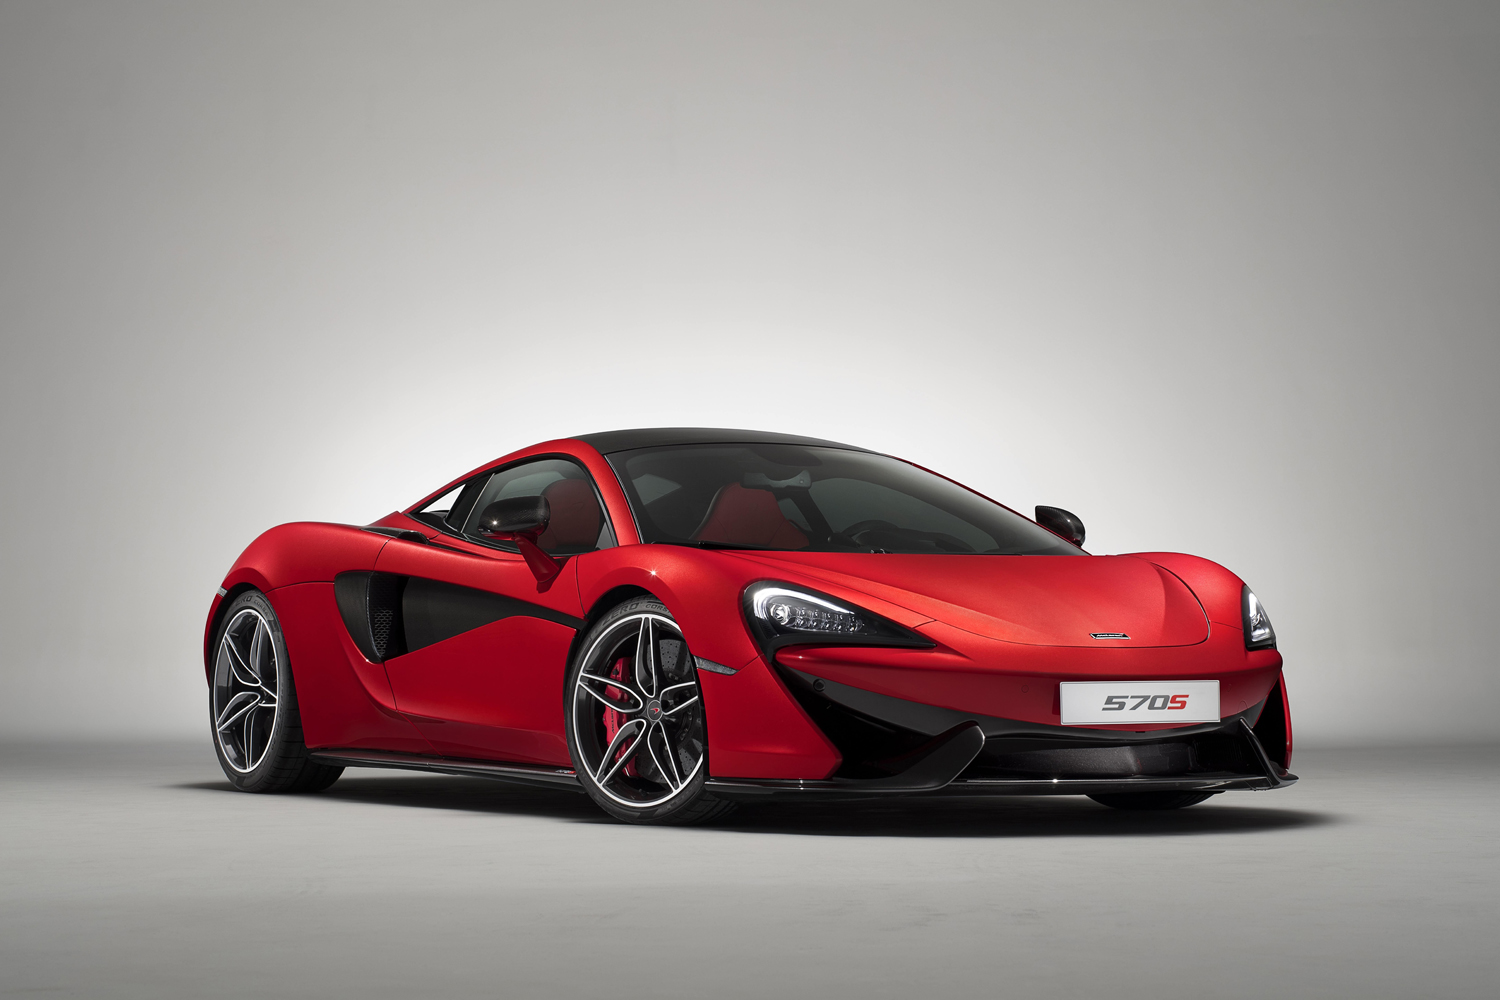 McLaren promoot de 570S met Design Editions